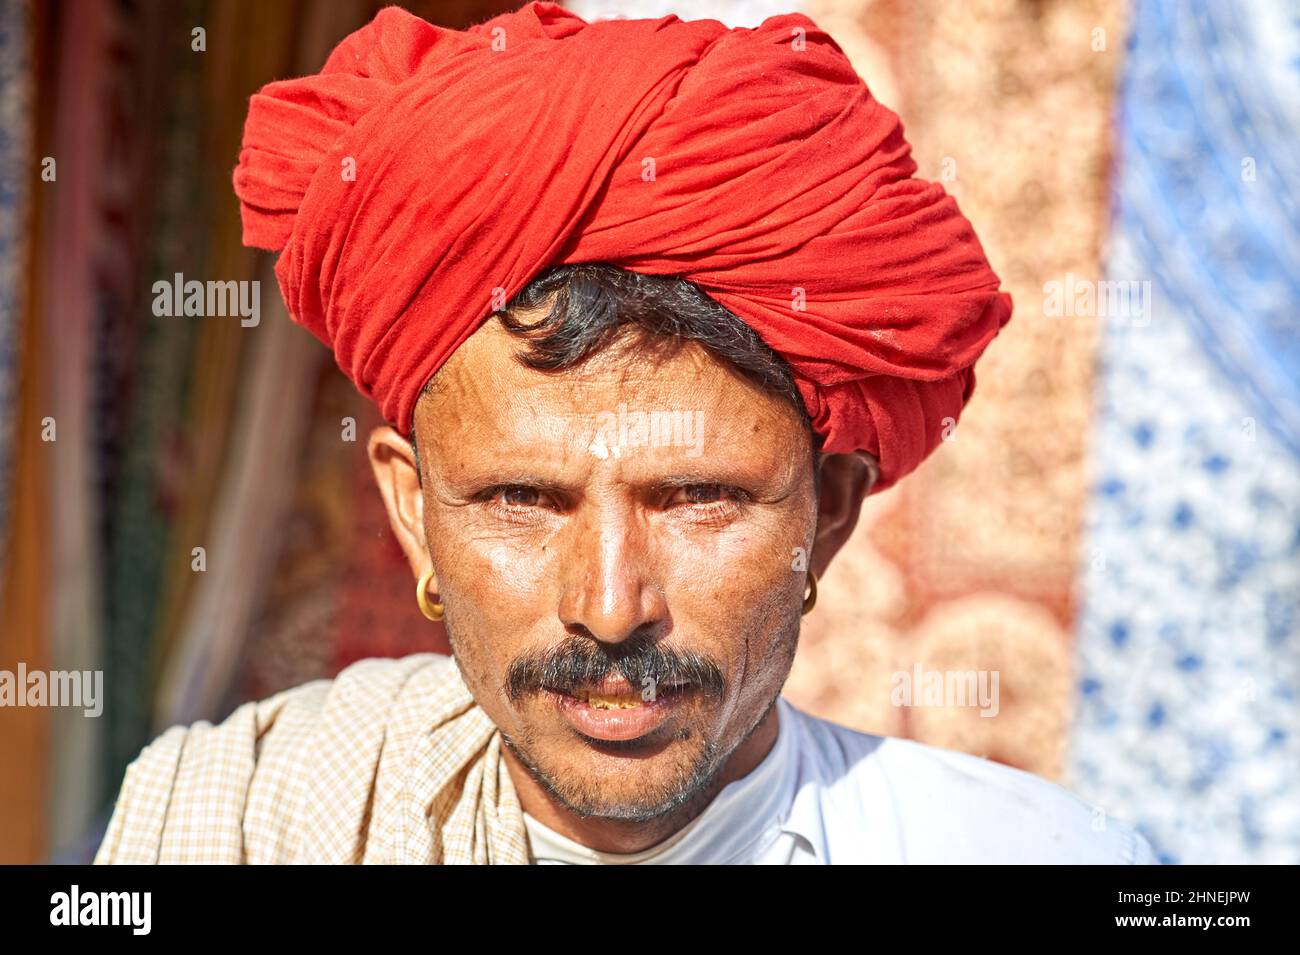 Inde Rajasthan jaisalmer. Portrait d'un homme au turban rouge Banque D'Images